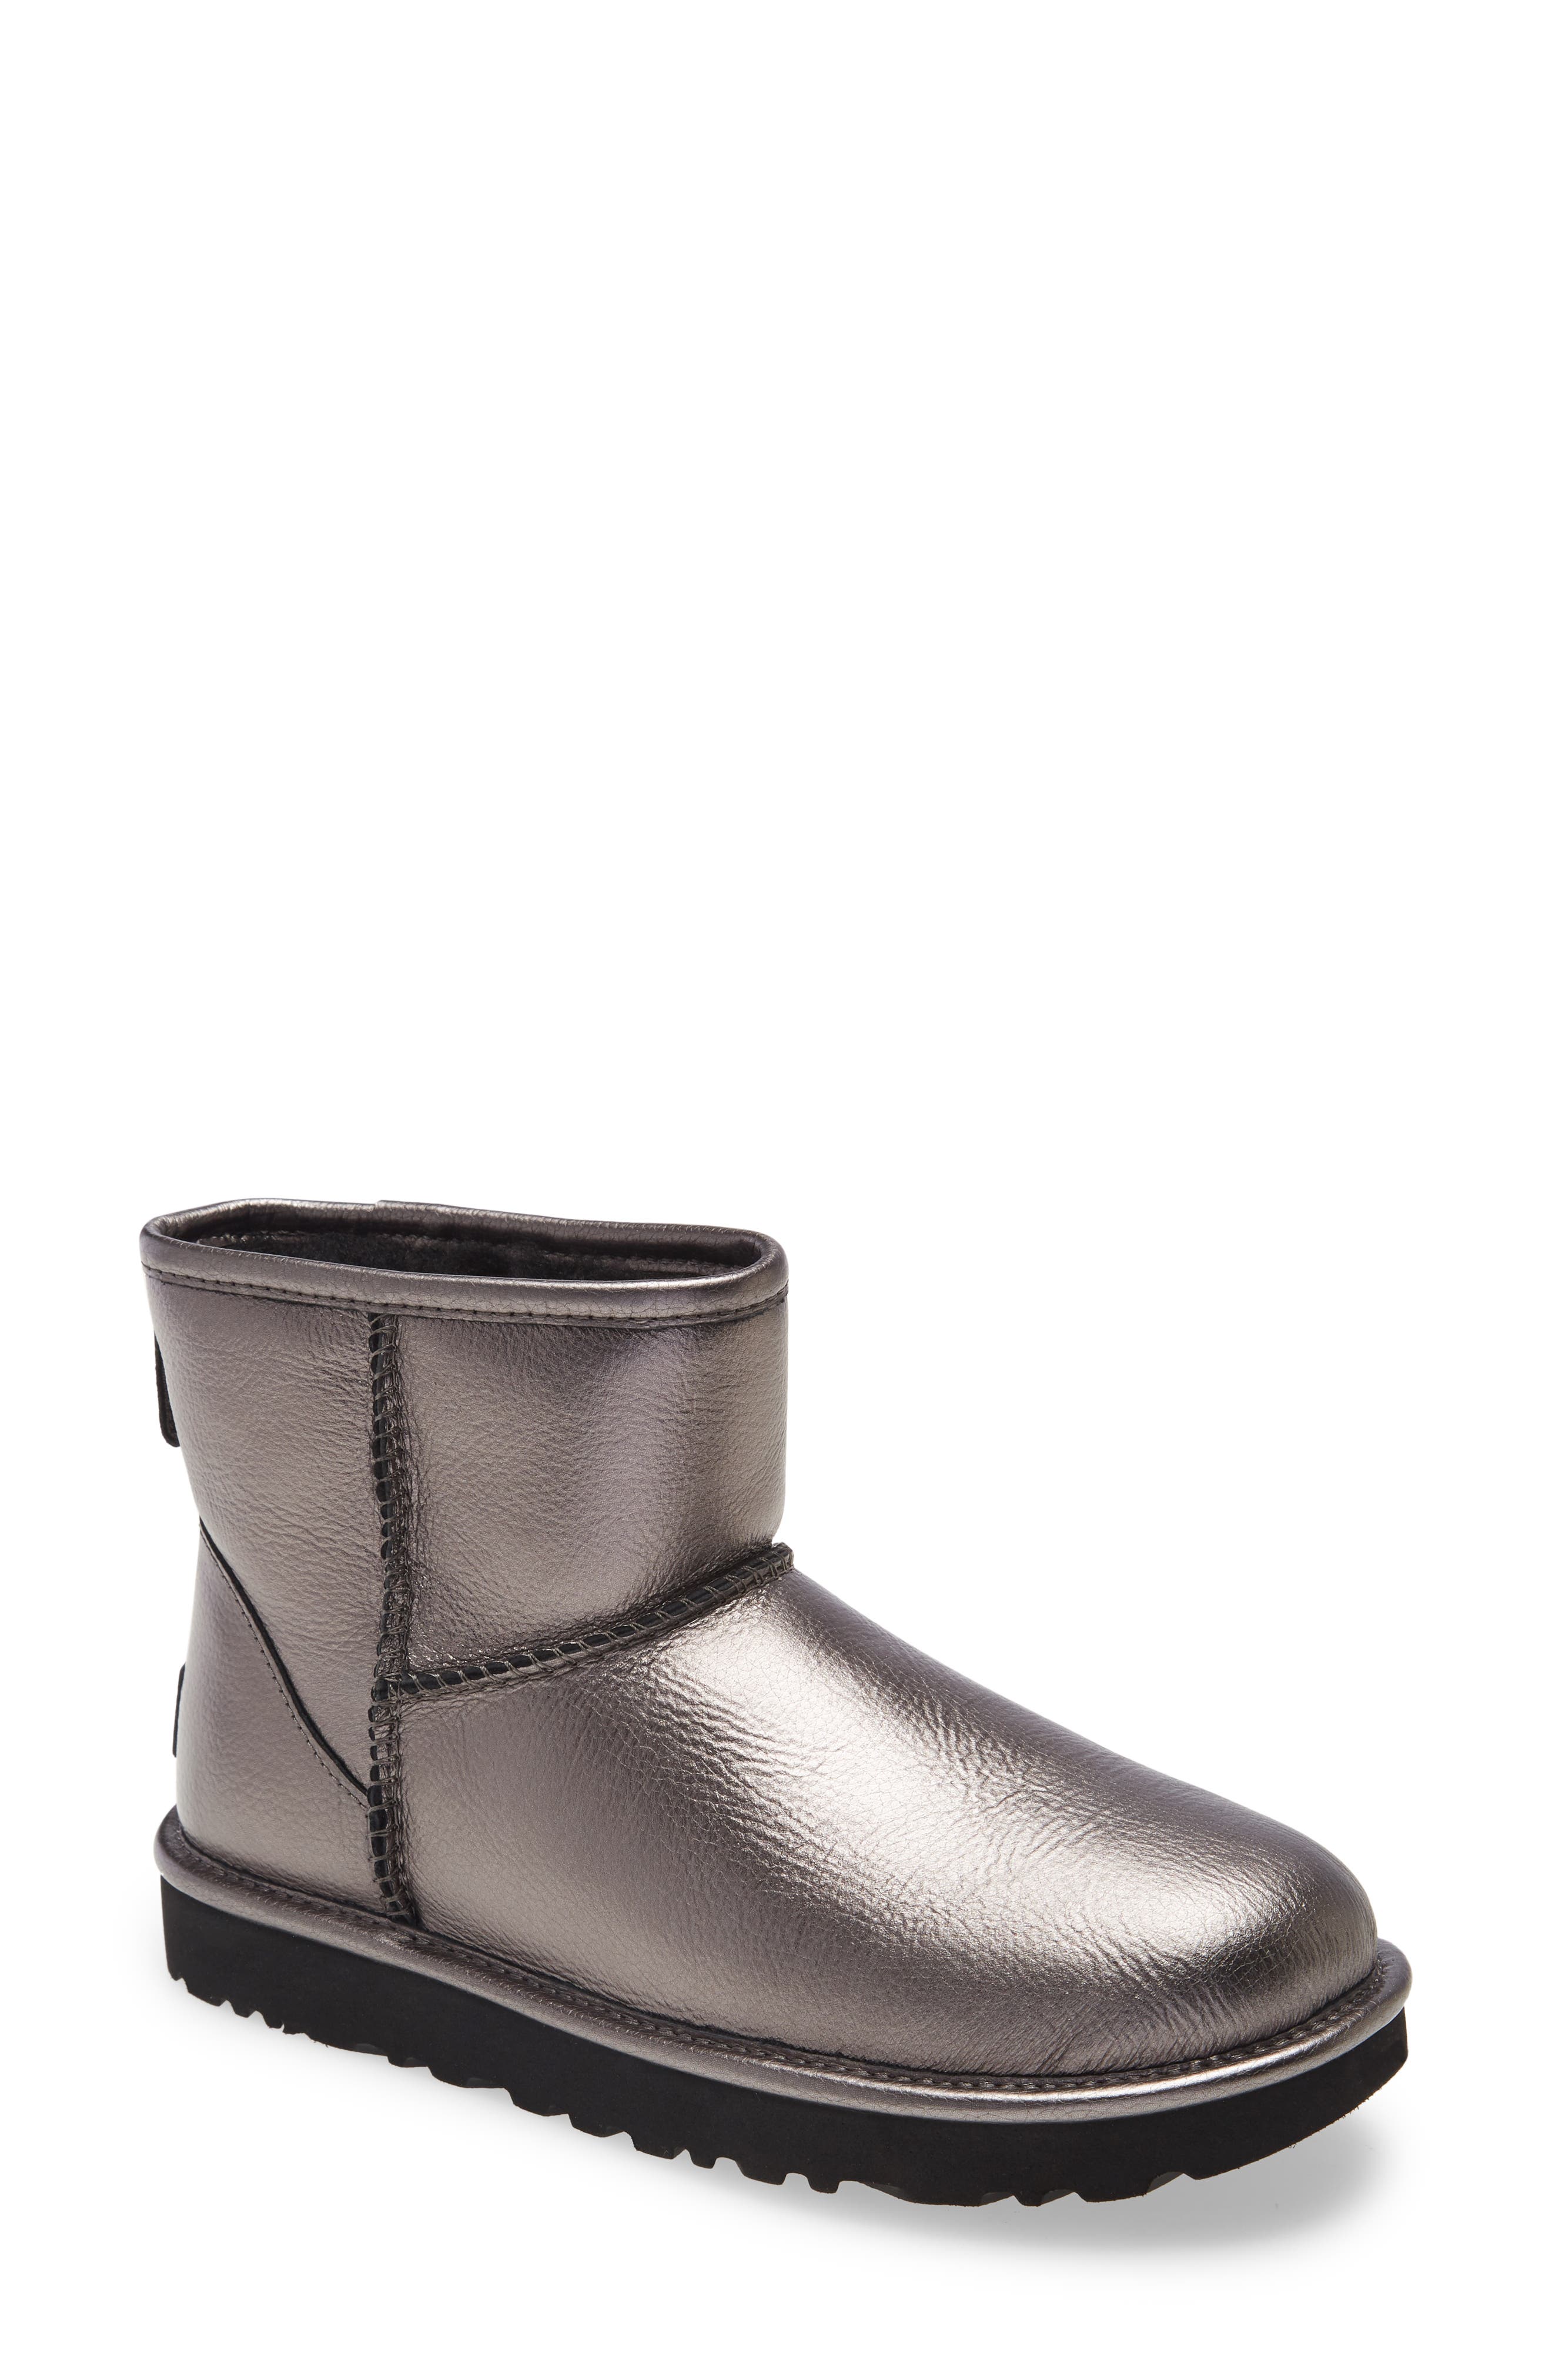 grey metallic ugg boots